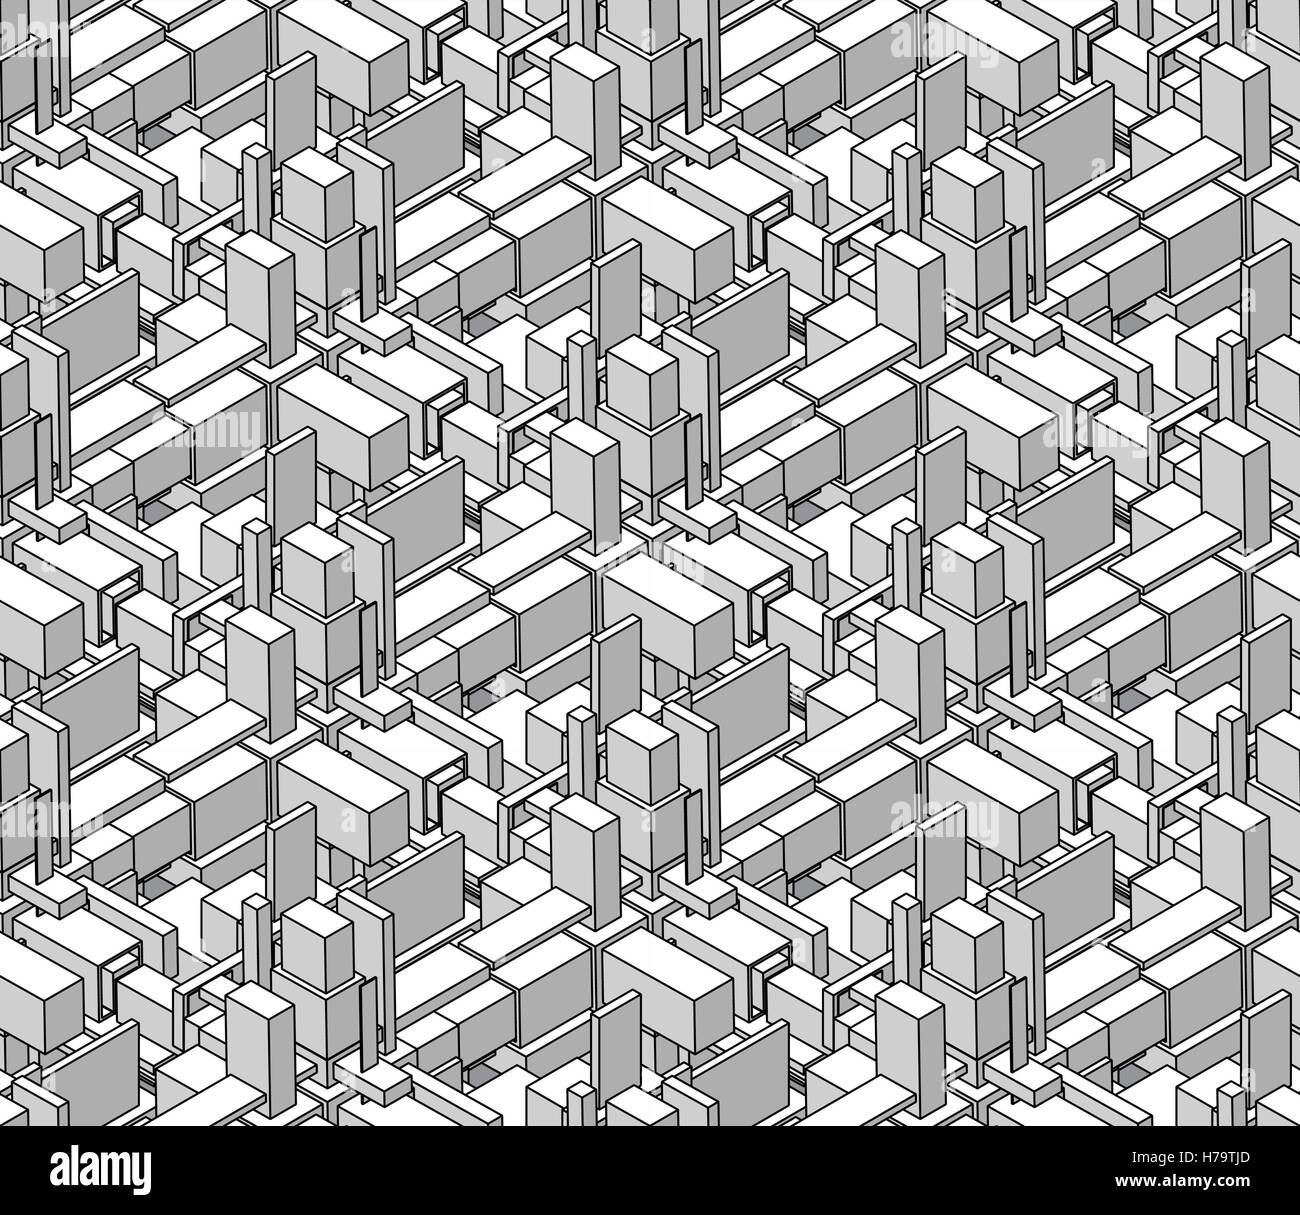 Vektor und nahtlose schwarz schattiert isometrische Blöcke Cubic Stadt Zusammensetzung Muster Stock Vektor